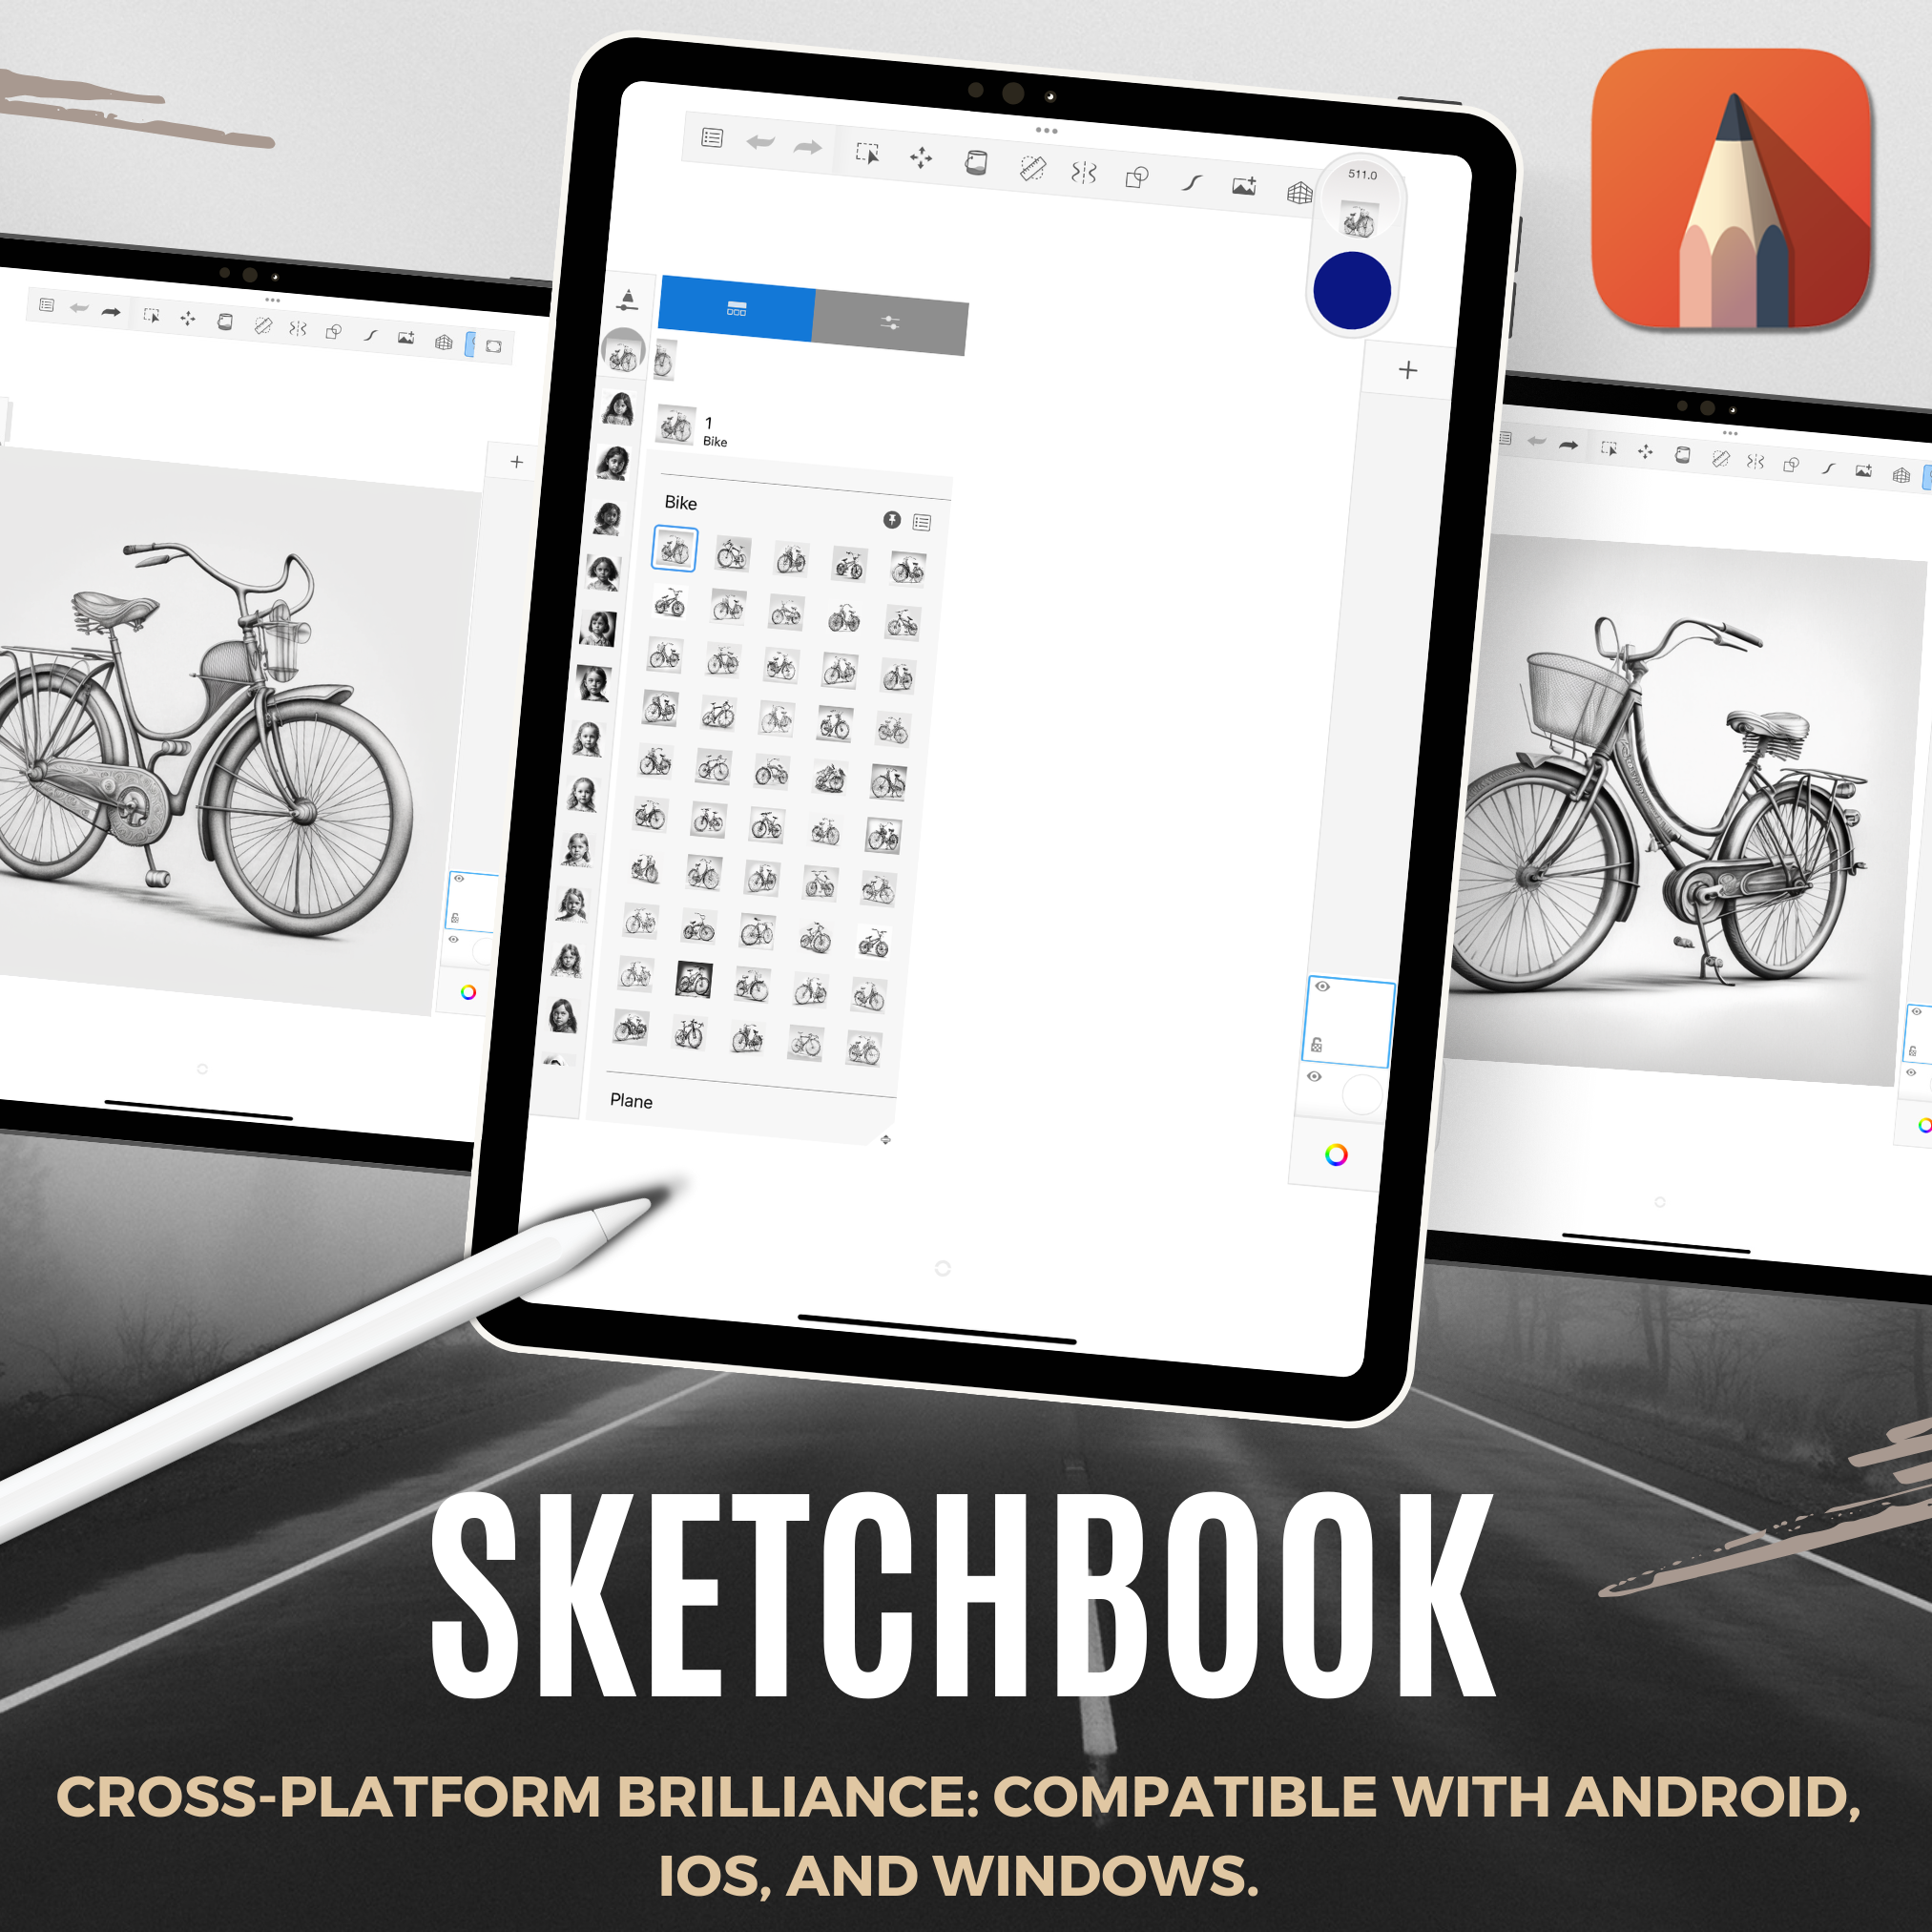 Colección de diseño digital de bicicletas: 50 imágenes de Procreate y Sketchbook